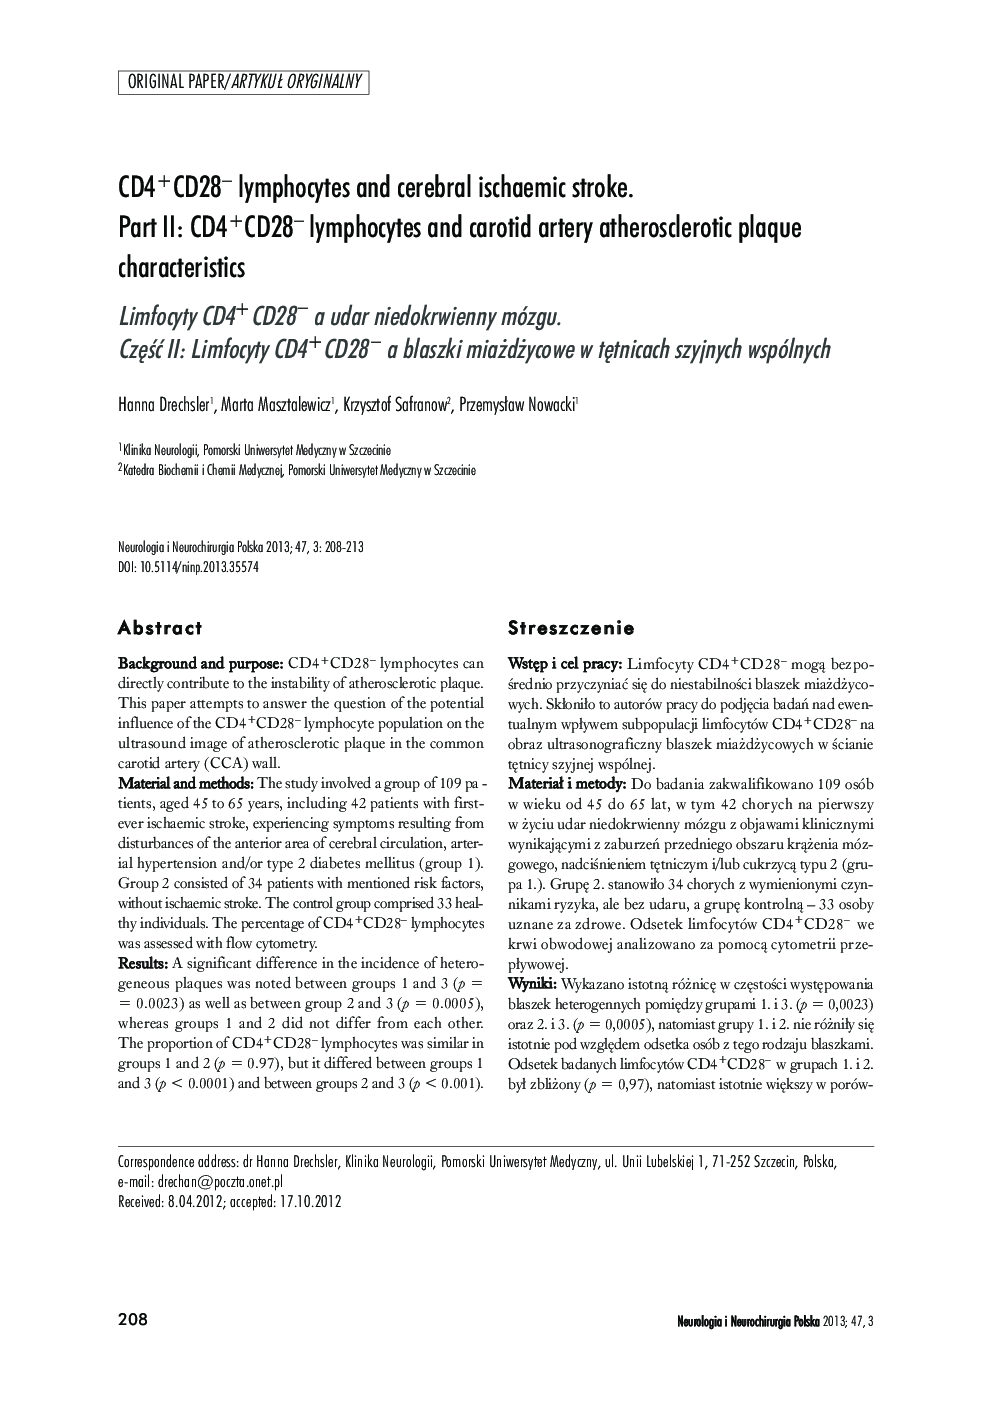 CD4+CD28− lymphocytes and cerebral ischaemic stroke. Part II: CD4+CD28− lymphocytes and carotid artery atherosclerotic plaque characteristics